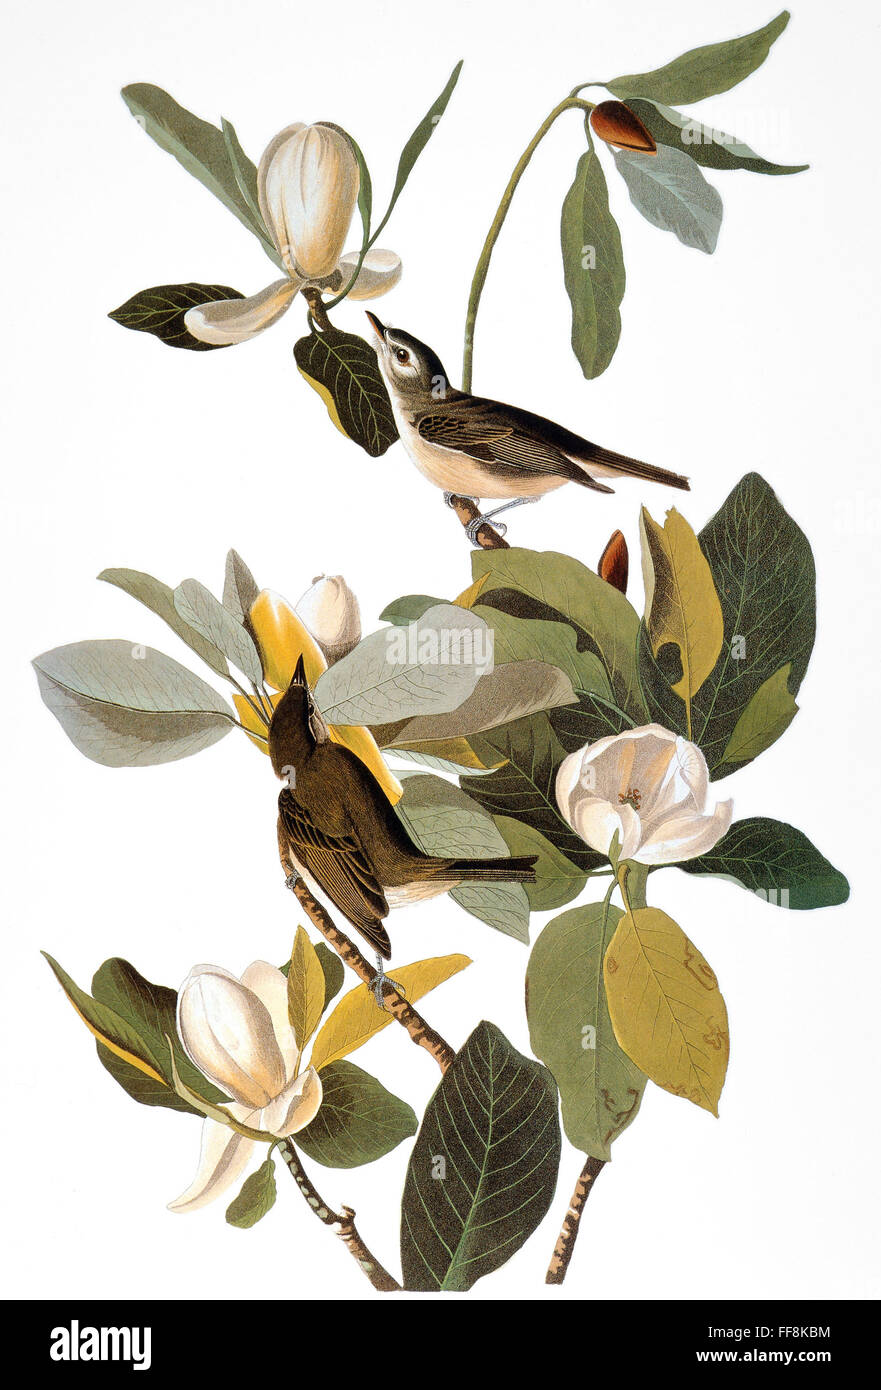 AUDUBON: VIREO. /nWarbling Vireo (Vireo gilvus), from John James Audubon's 'Birds of America,' 1827-1838. Stock Photo